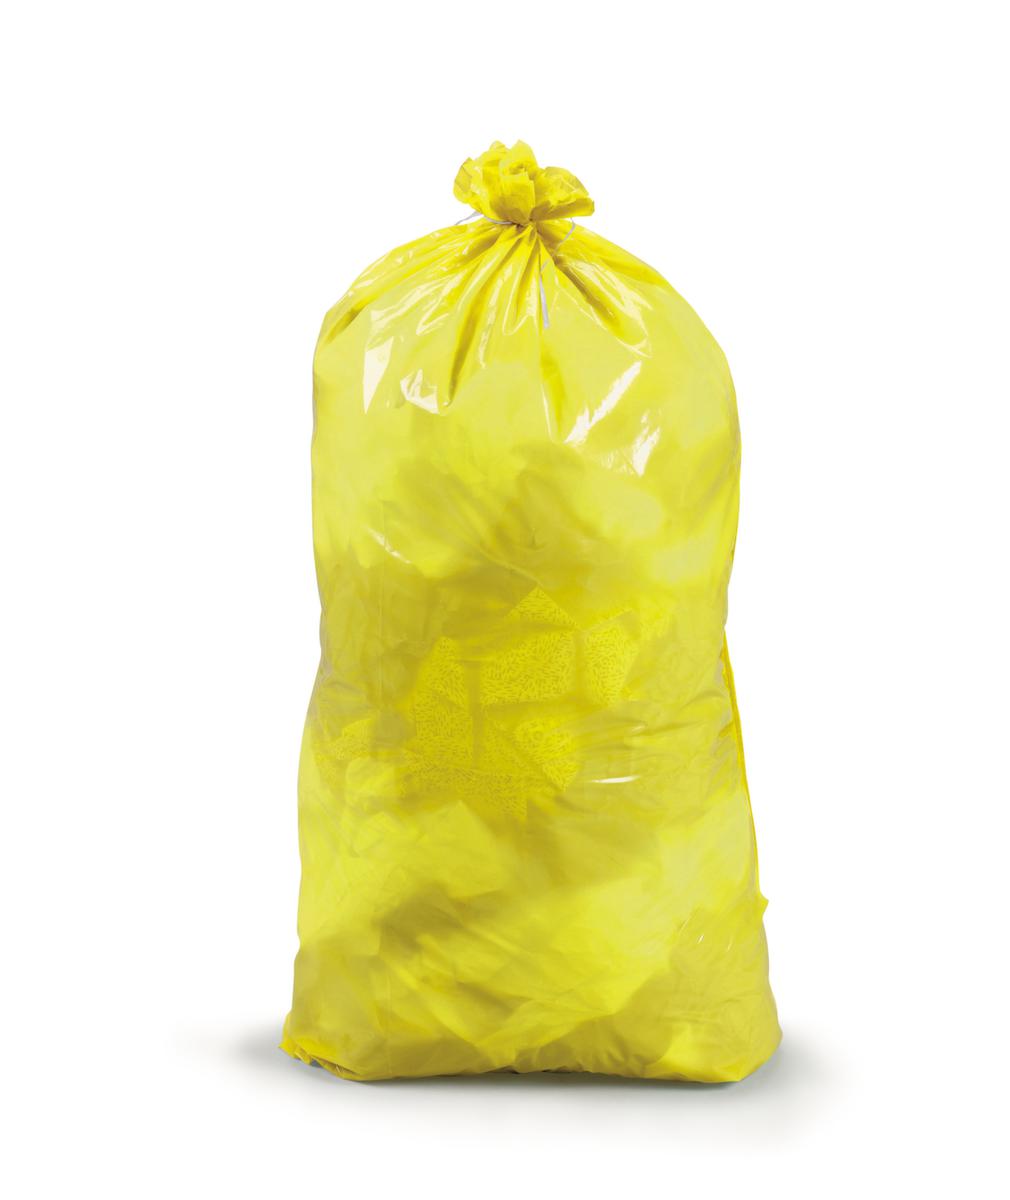 Raja Reißfester Müllsack mit Verschlussband, 30 l, gelb Standard 1 ZOOM